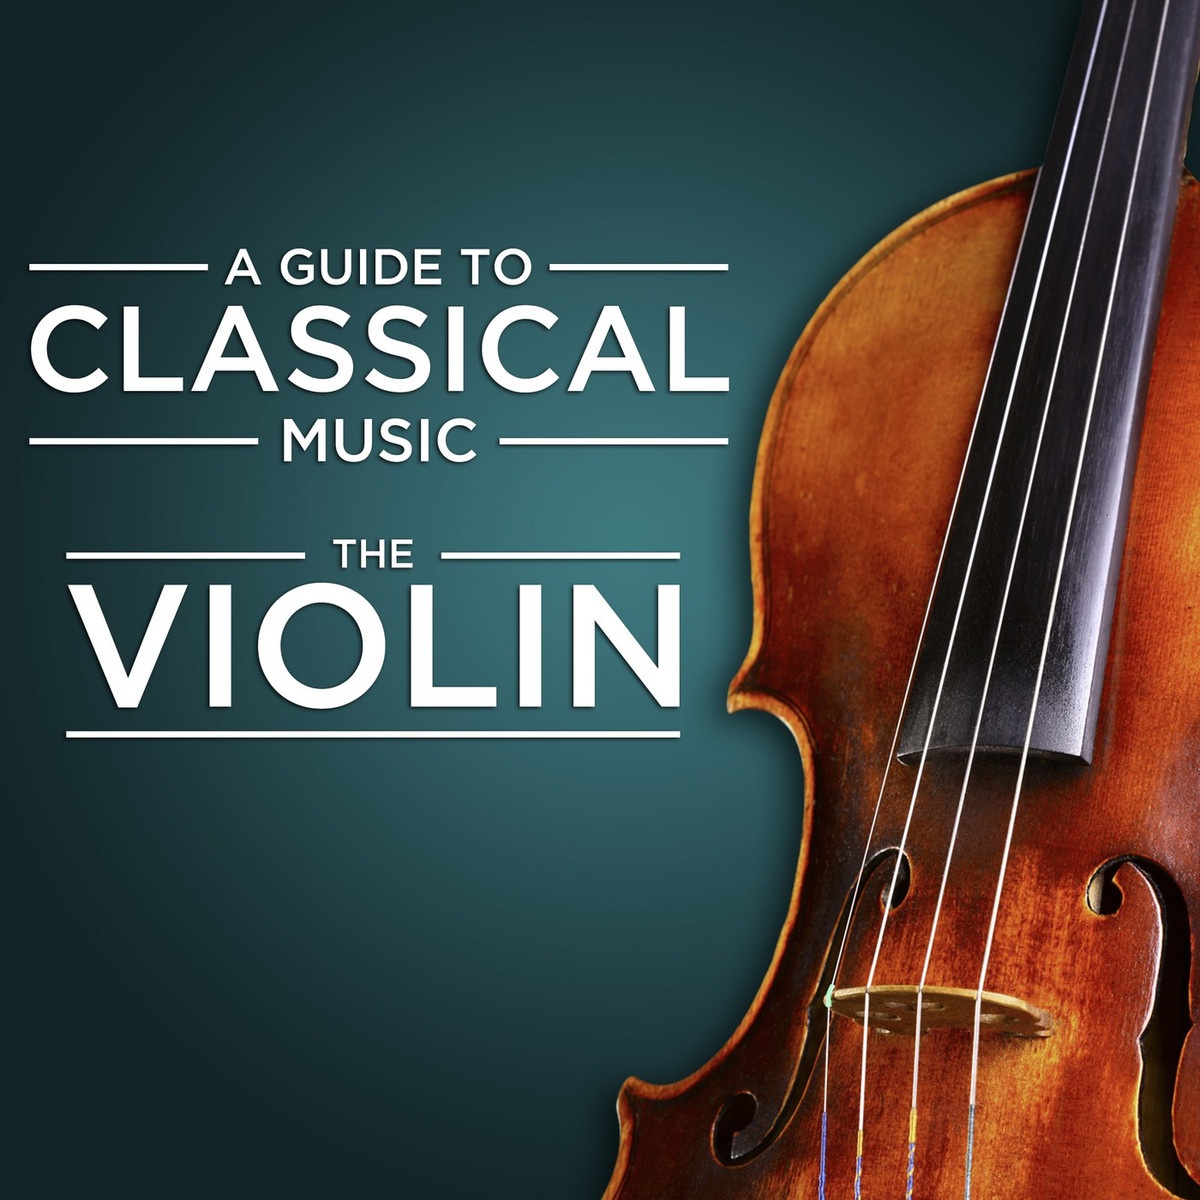 Sonata in A Major for Violin and Piano, M. 8: IV. Allegretto poco mosso